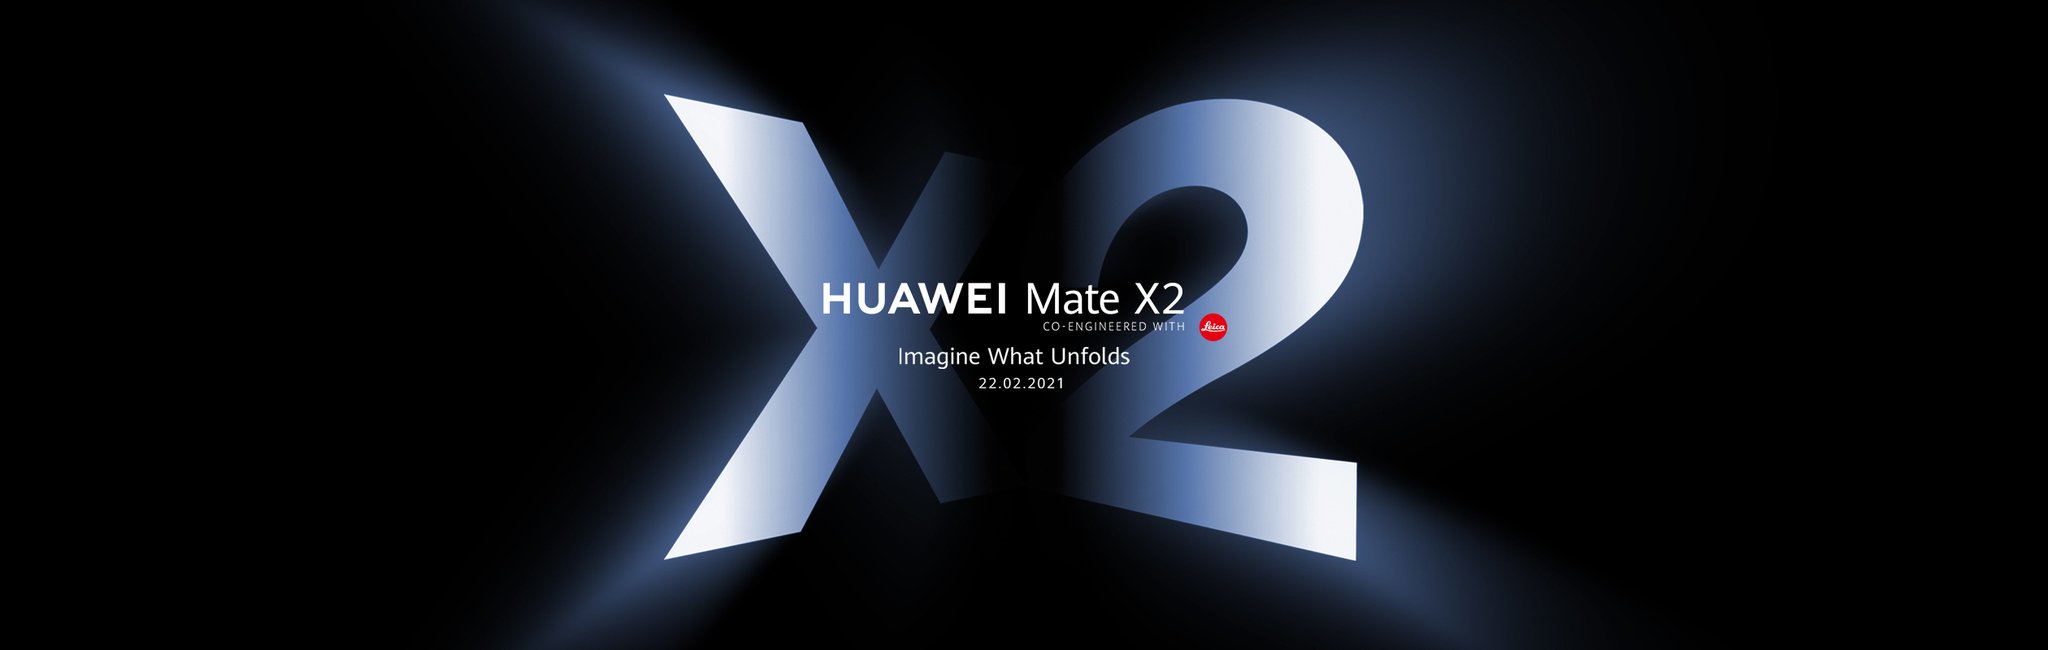 Huawei Mate X2 Hero